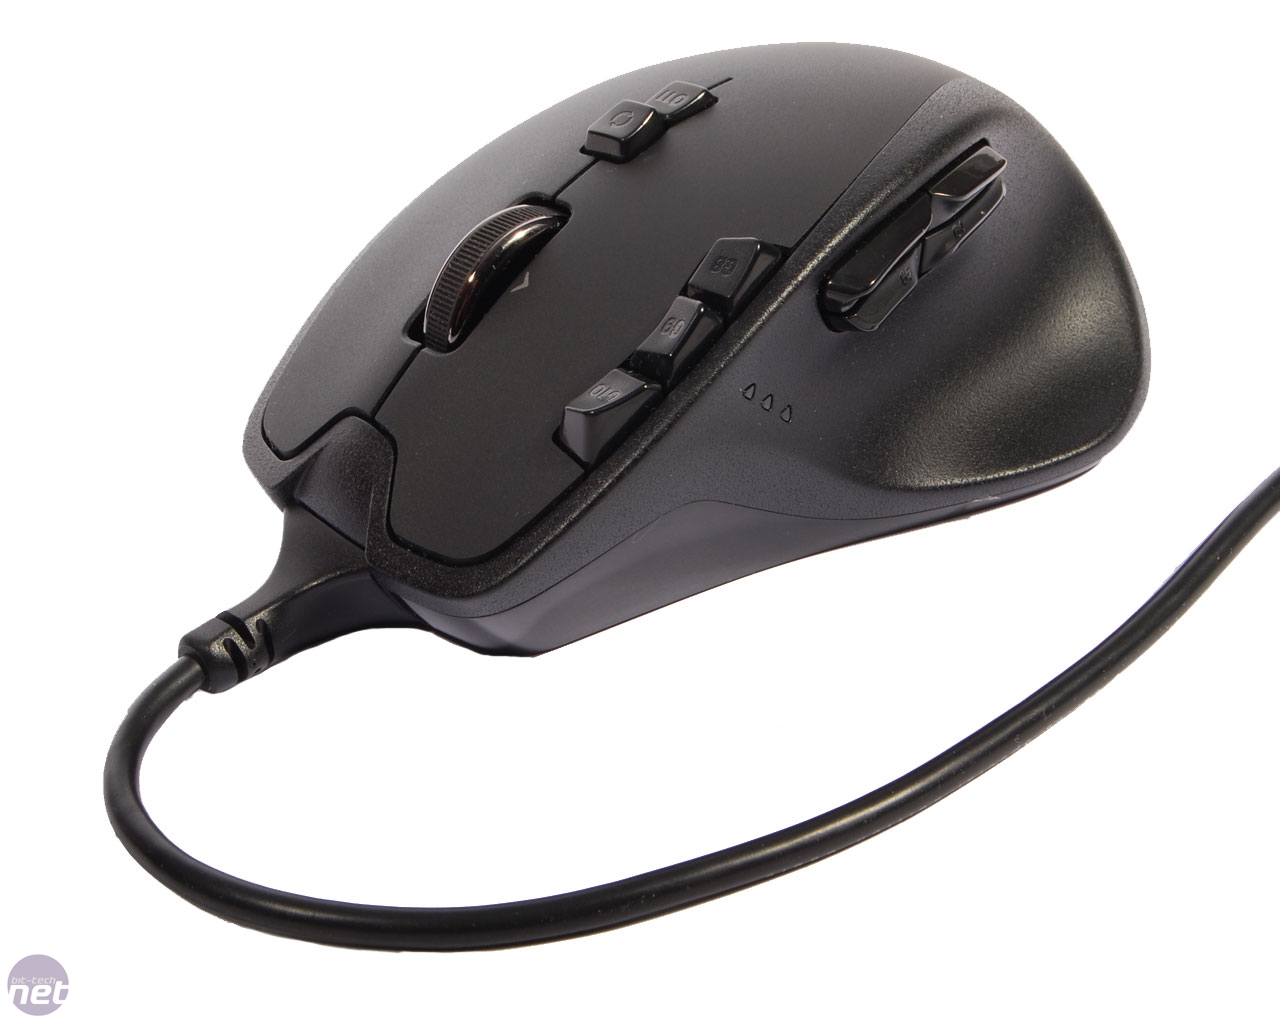 satıldı Logitech G700 mouse | DonanımHaber Forum